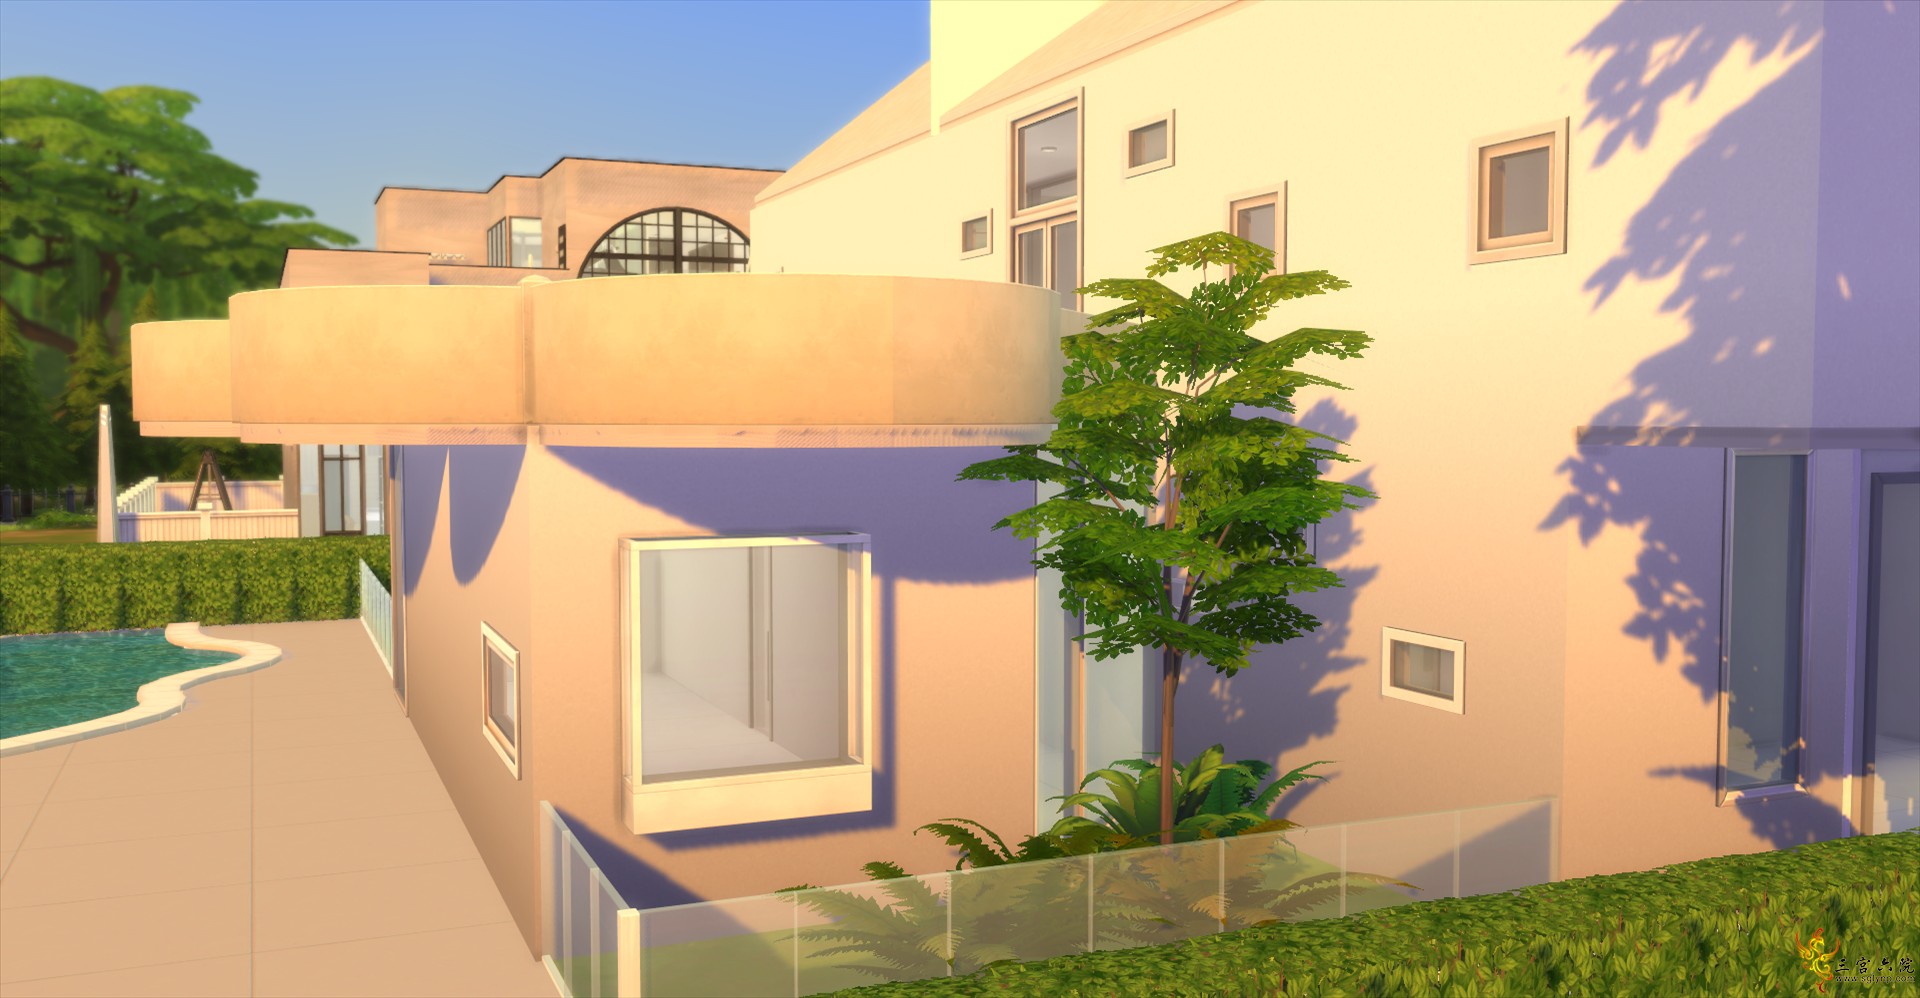 Sims 4 Screenshot 2021.06.30 - 14.50.56.77.png